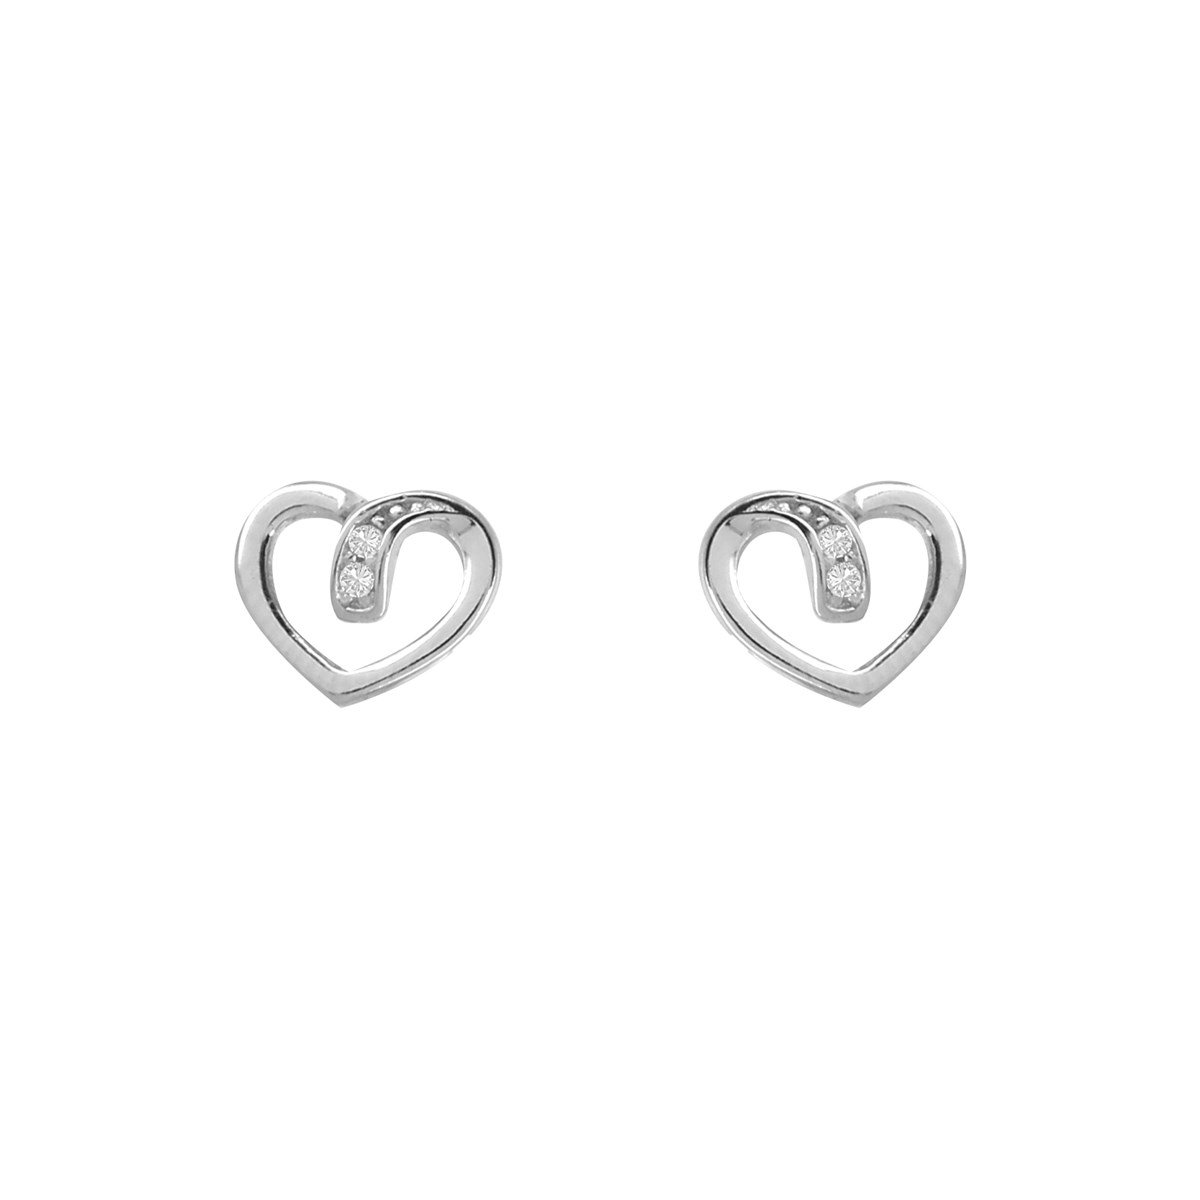 Boucles d'oreilles coeur en argent 925 rhodié et oxyde de zirconium